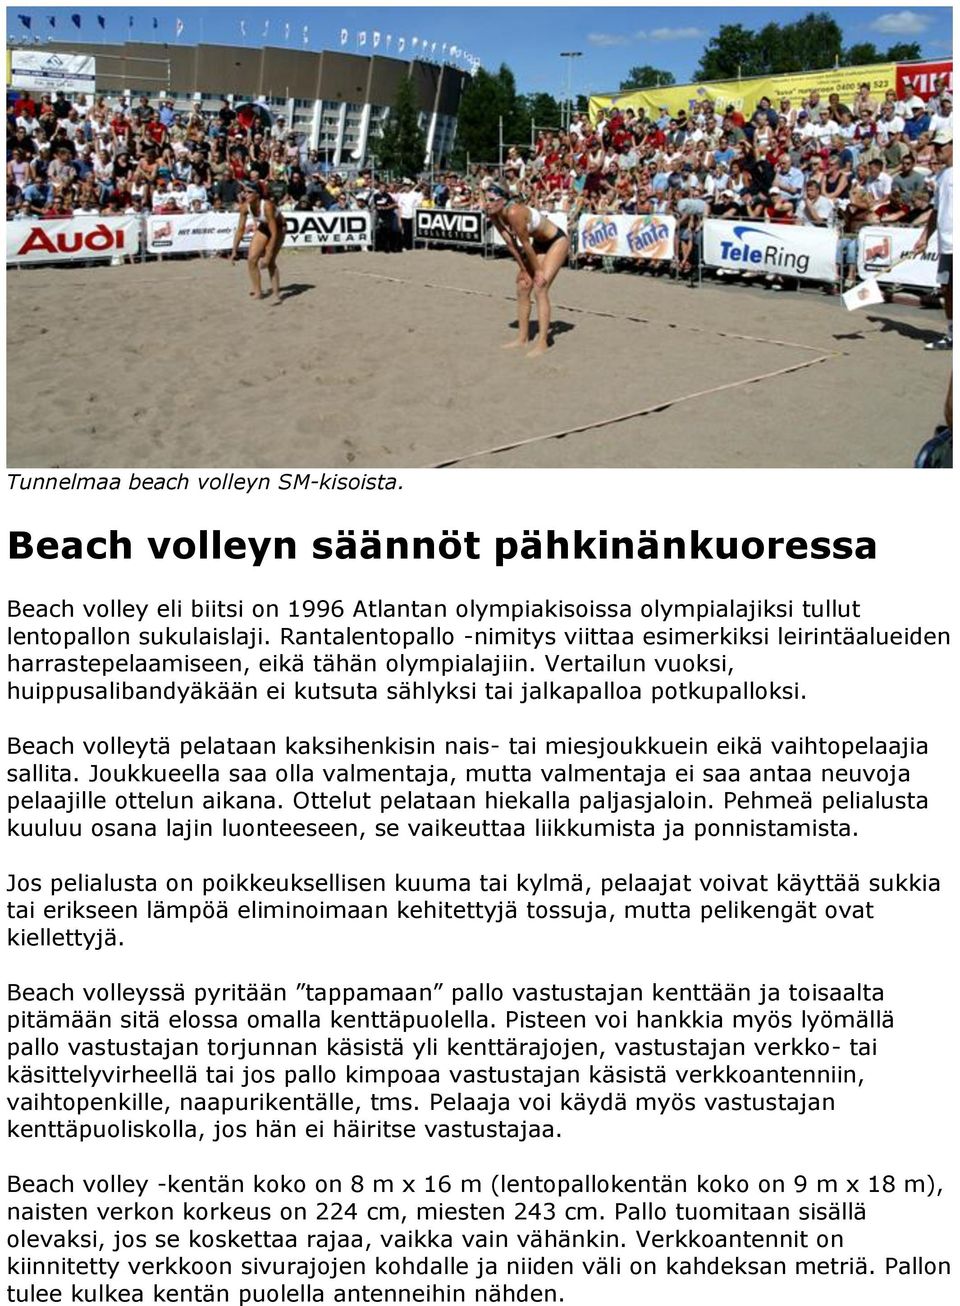 Beach volleytä pelataan kaksihenkisin nais- tai miesjoukkuein eikä vaihtopelaajia sallita. Joukkueella saa olla valmentaja, mutta valmentaja ei saa antaa neuvoja pelaajille ottelun aikana.